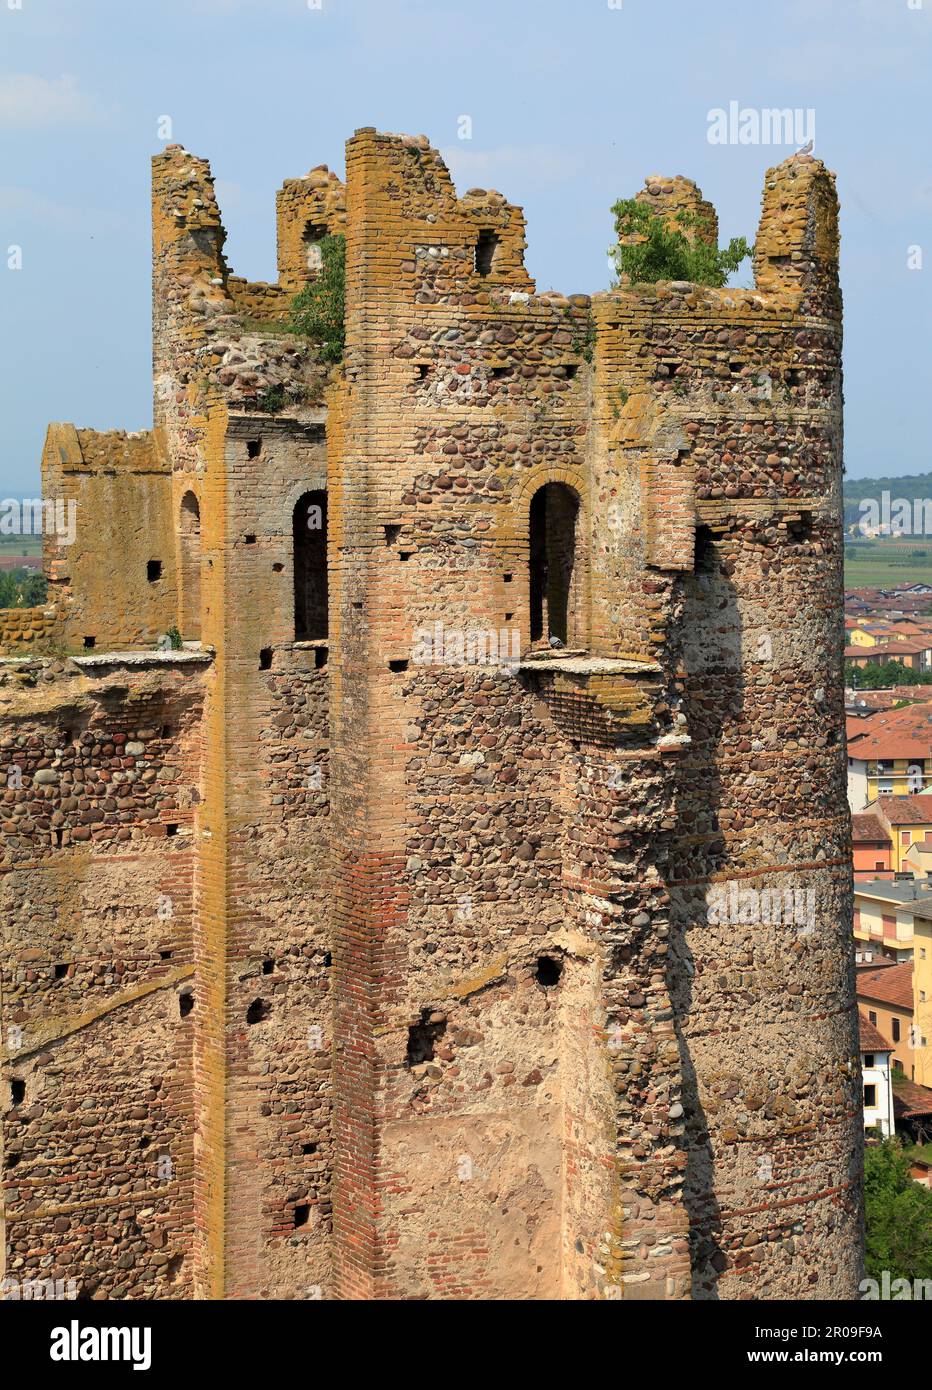 Medieval Scaliger Castle (Castello Scaligero), Valeggio sul Mincio, Italy. Torre Tonda tower. Stock Photo